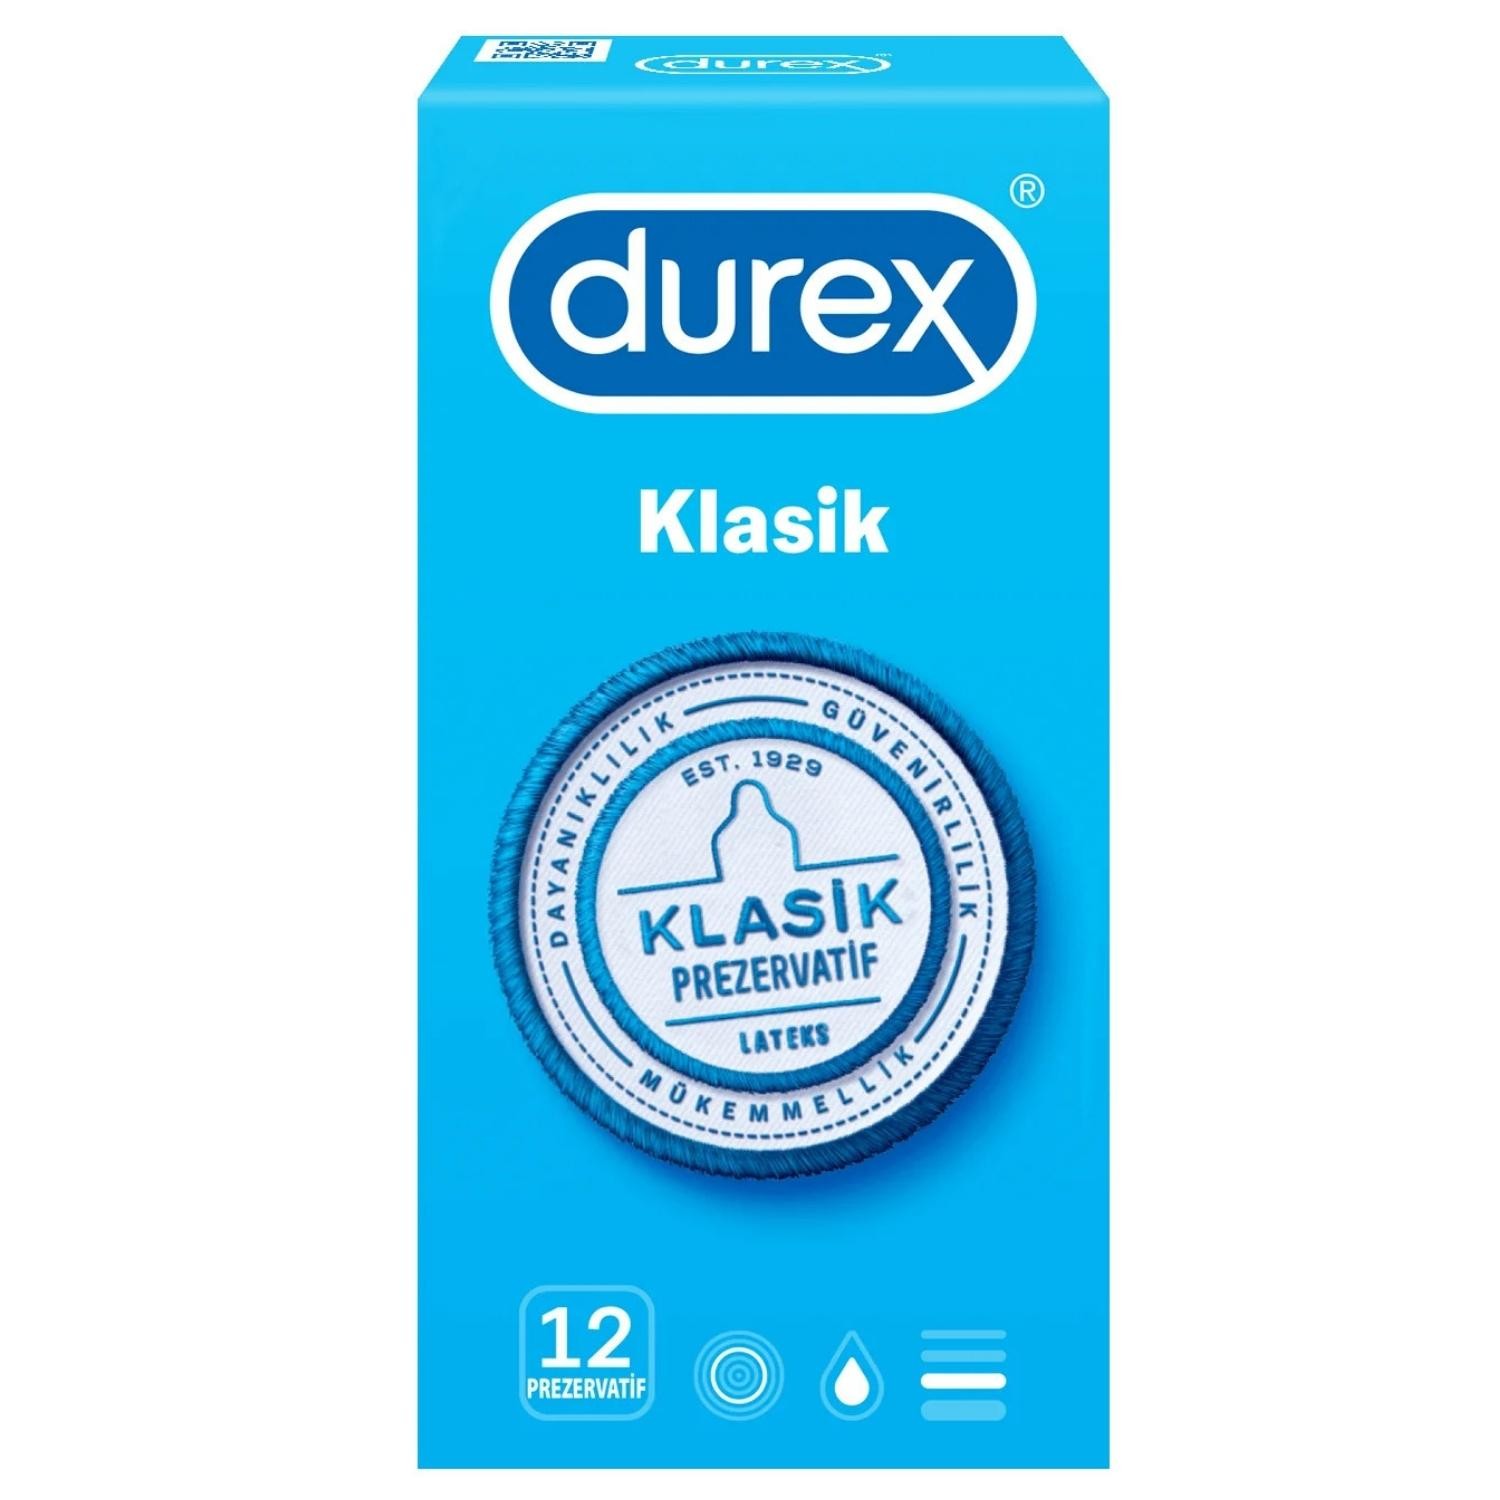 Durex Klasik Prezervatif 12'li Paket